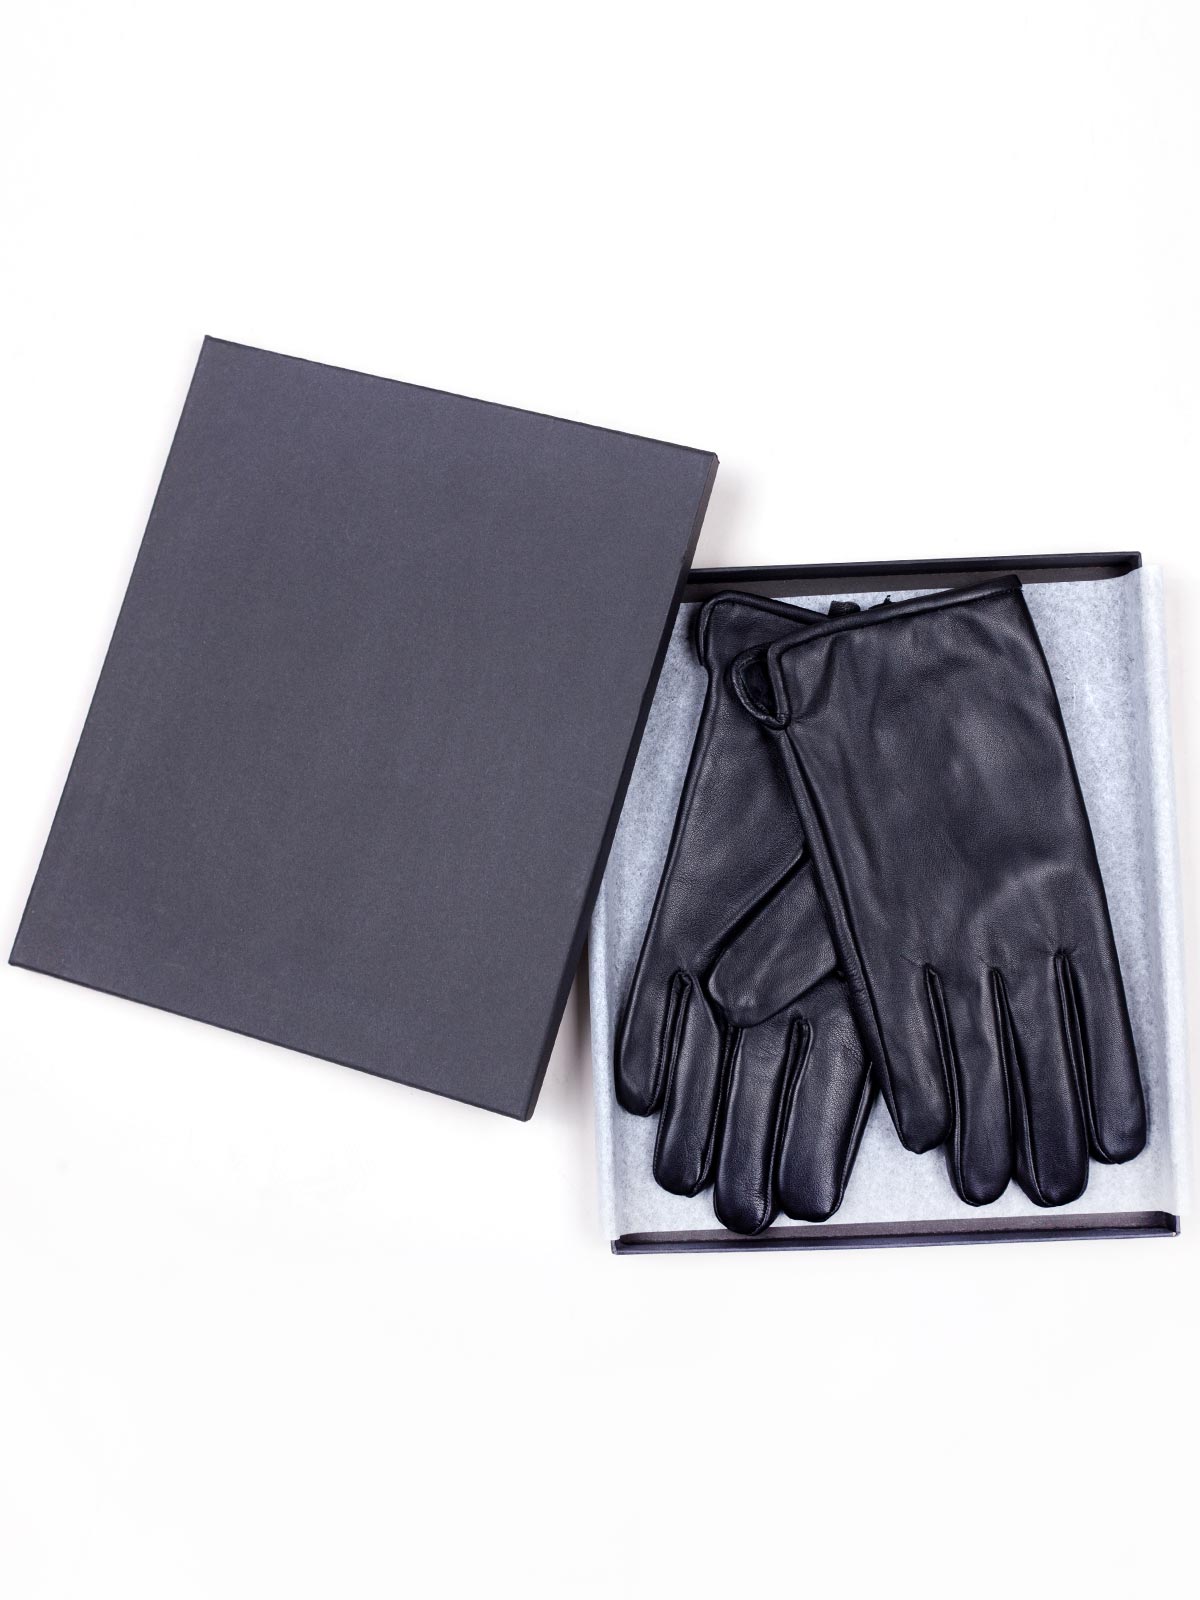  mănuși neagră din piele pură  - 10571 - € 31.50 img3